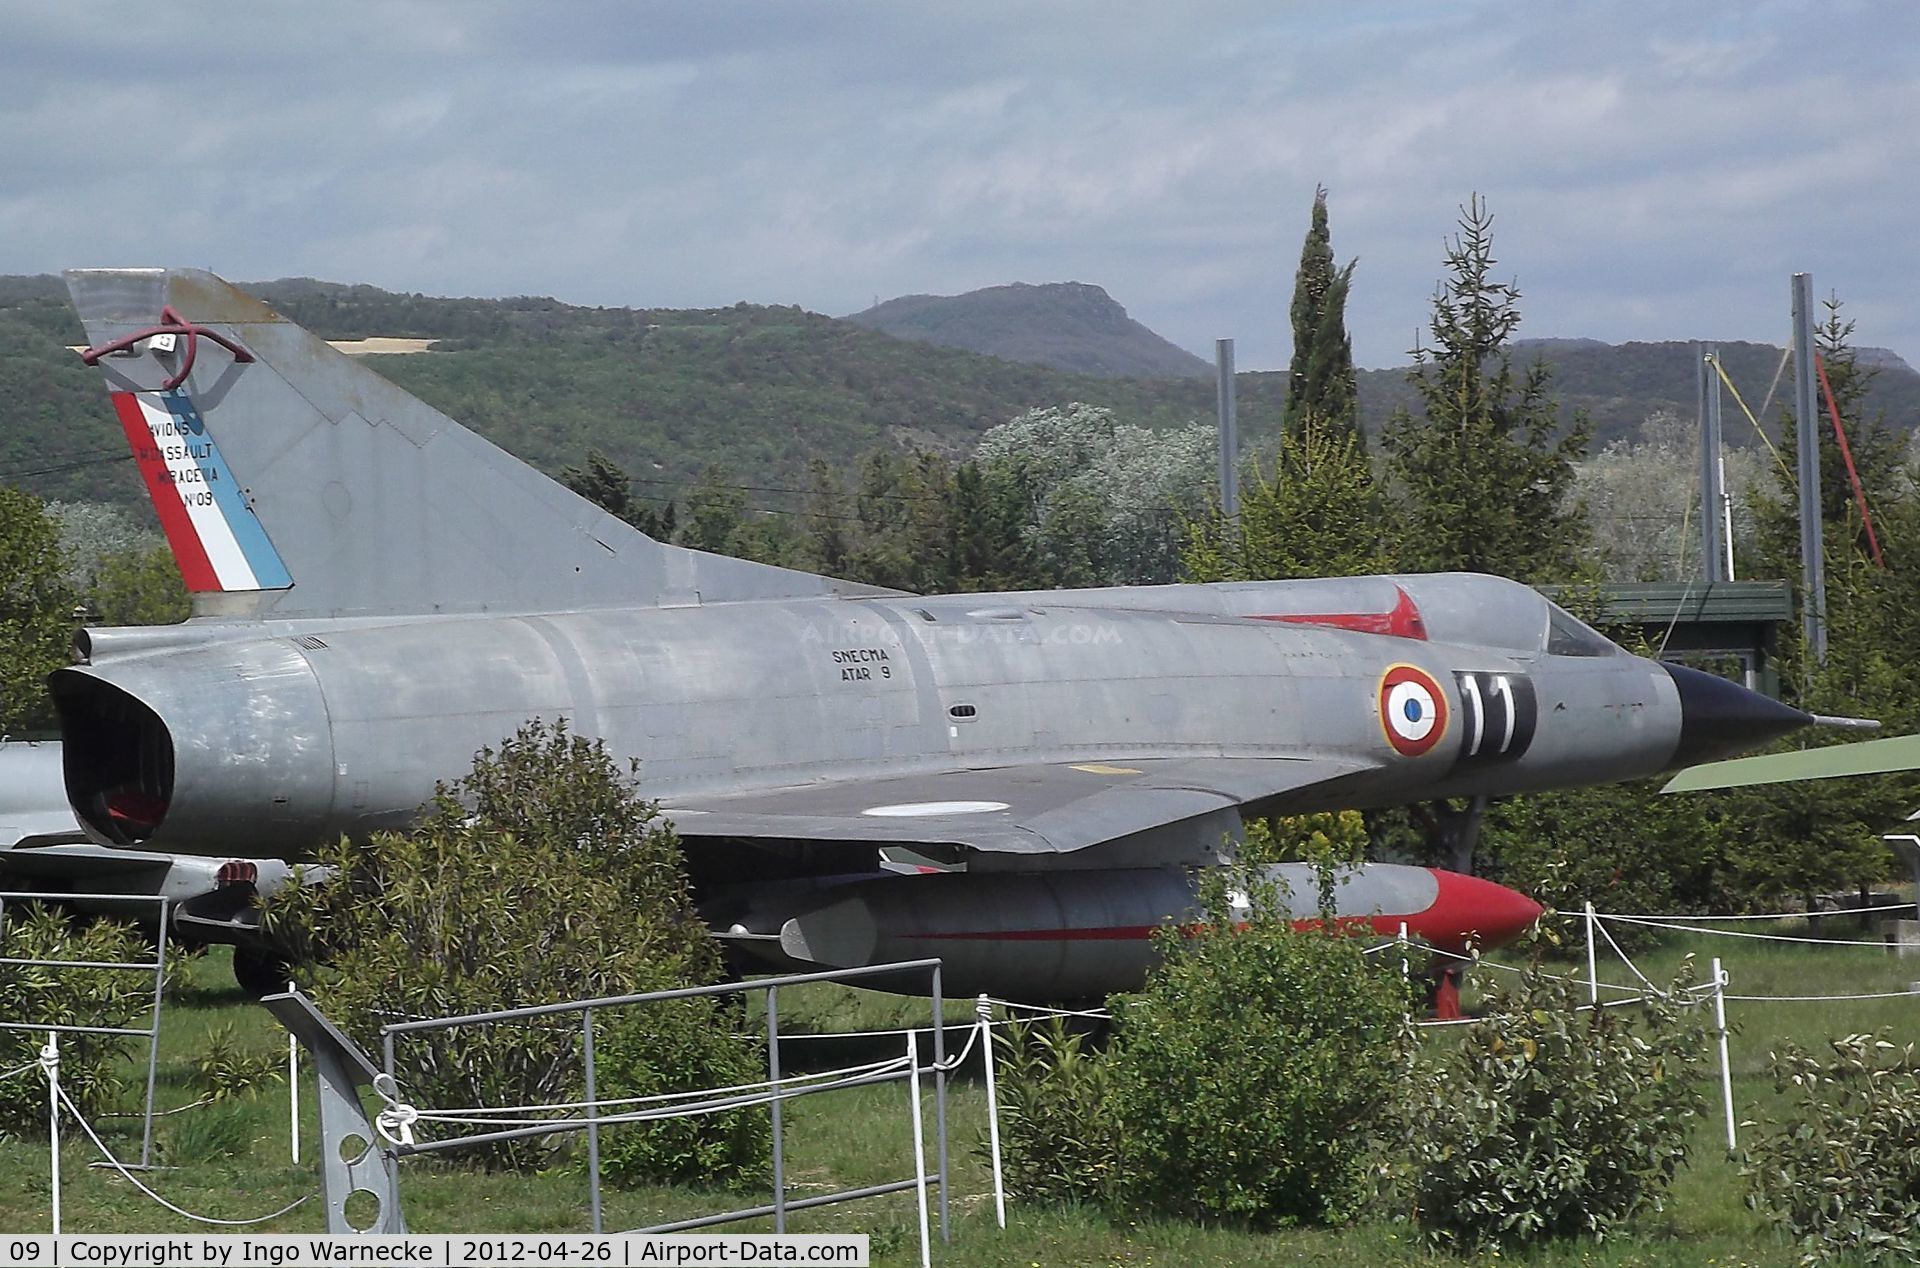 09, 1959 Dassault Mirage IIIA C/N 09, Dassault Mirage III A at the Musée Européen de l'Aviation de Chasse, Montelimar Ancone airfield